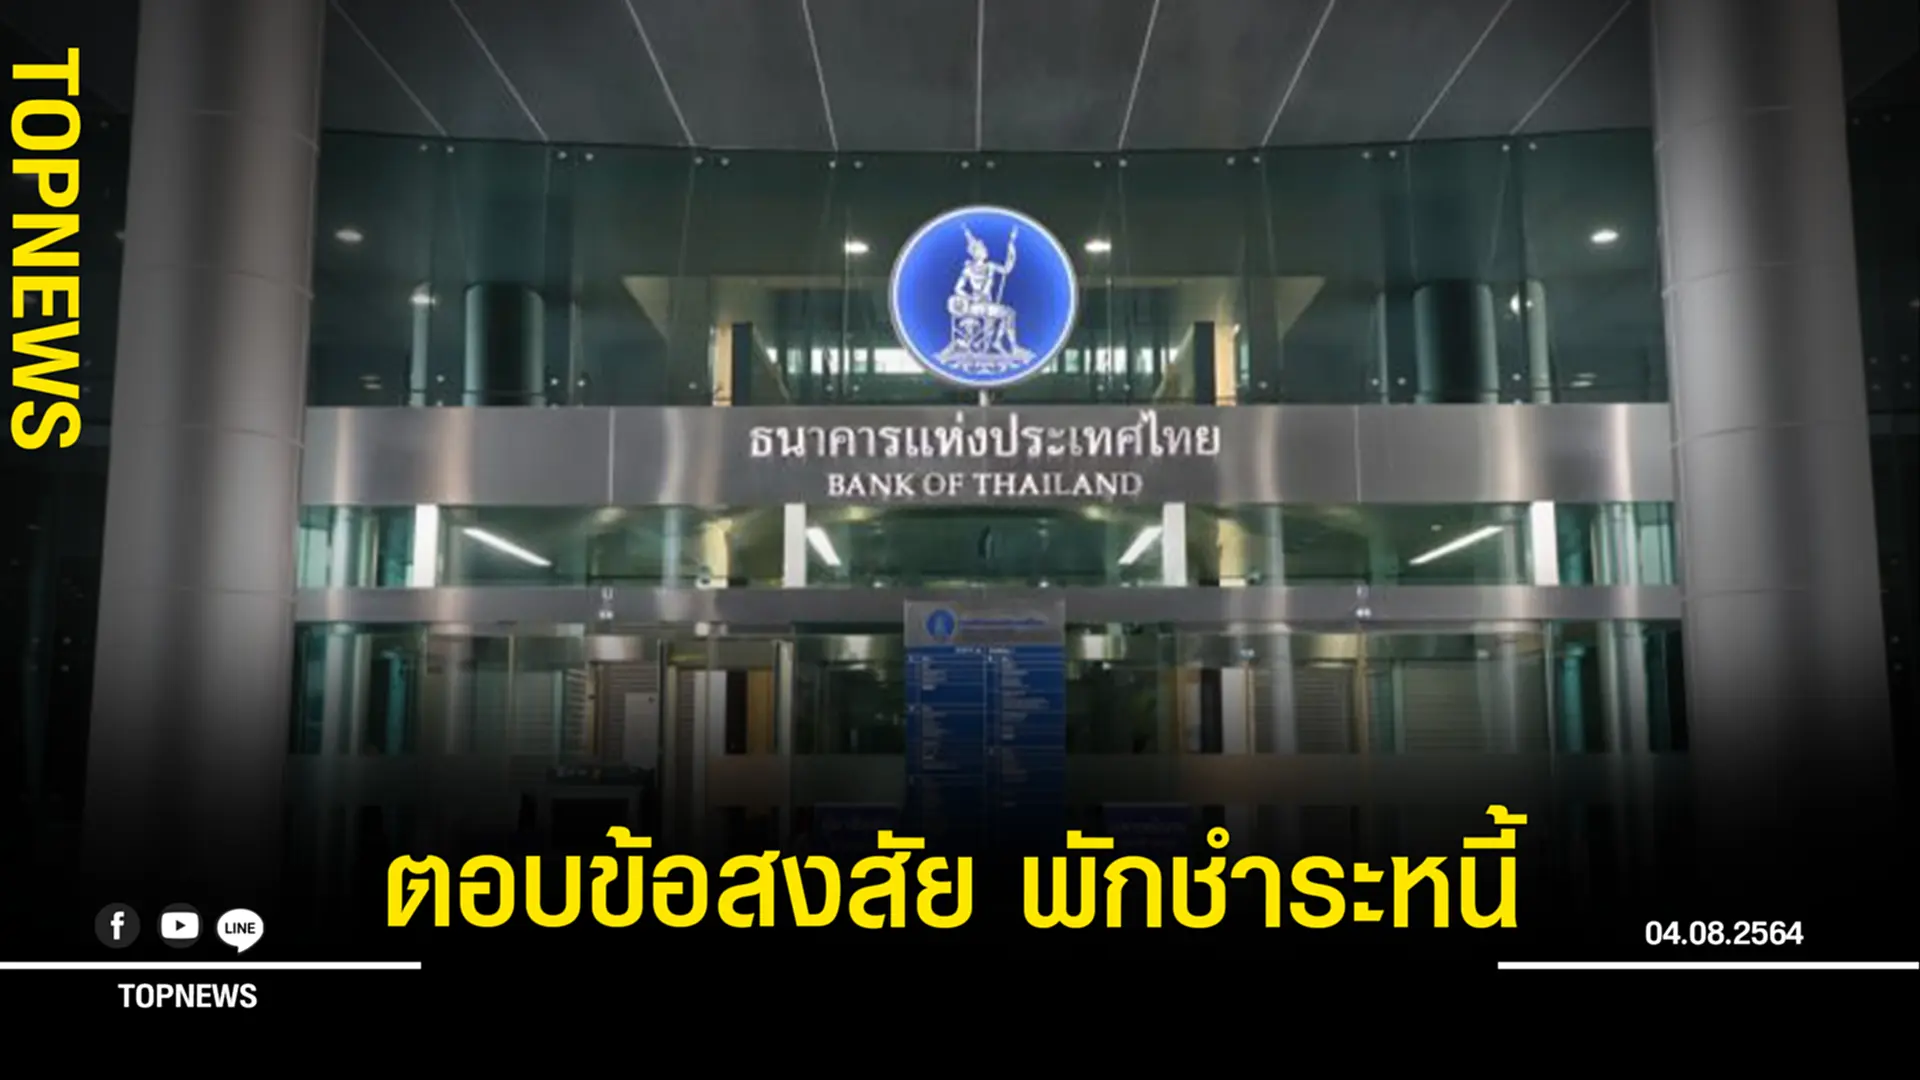 ธนาคารแห่งประเทศไทย ตอบข้อสงสัย มาตรการพักชำระหนี้ 2 เดือน ดอกเบี้ยยังเดินหรือไม่